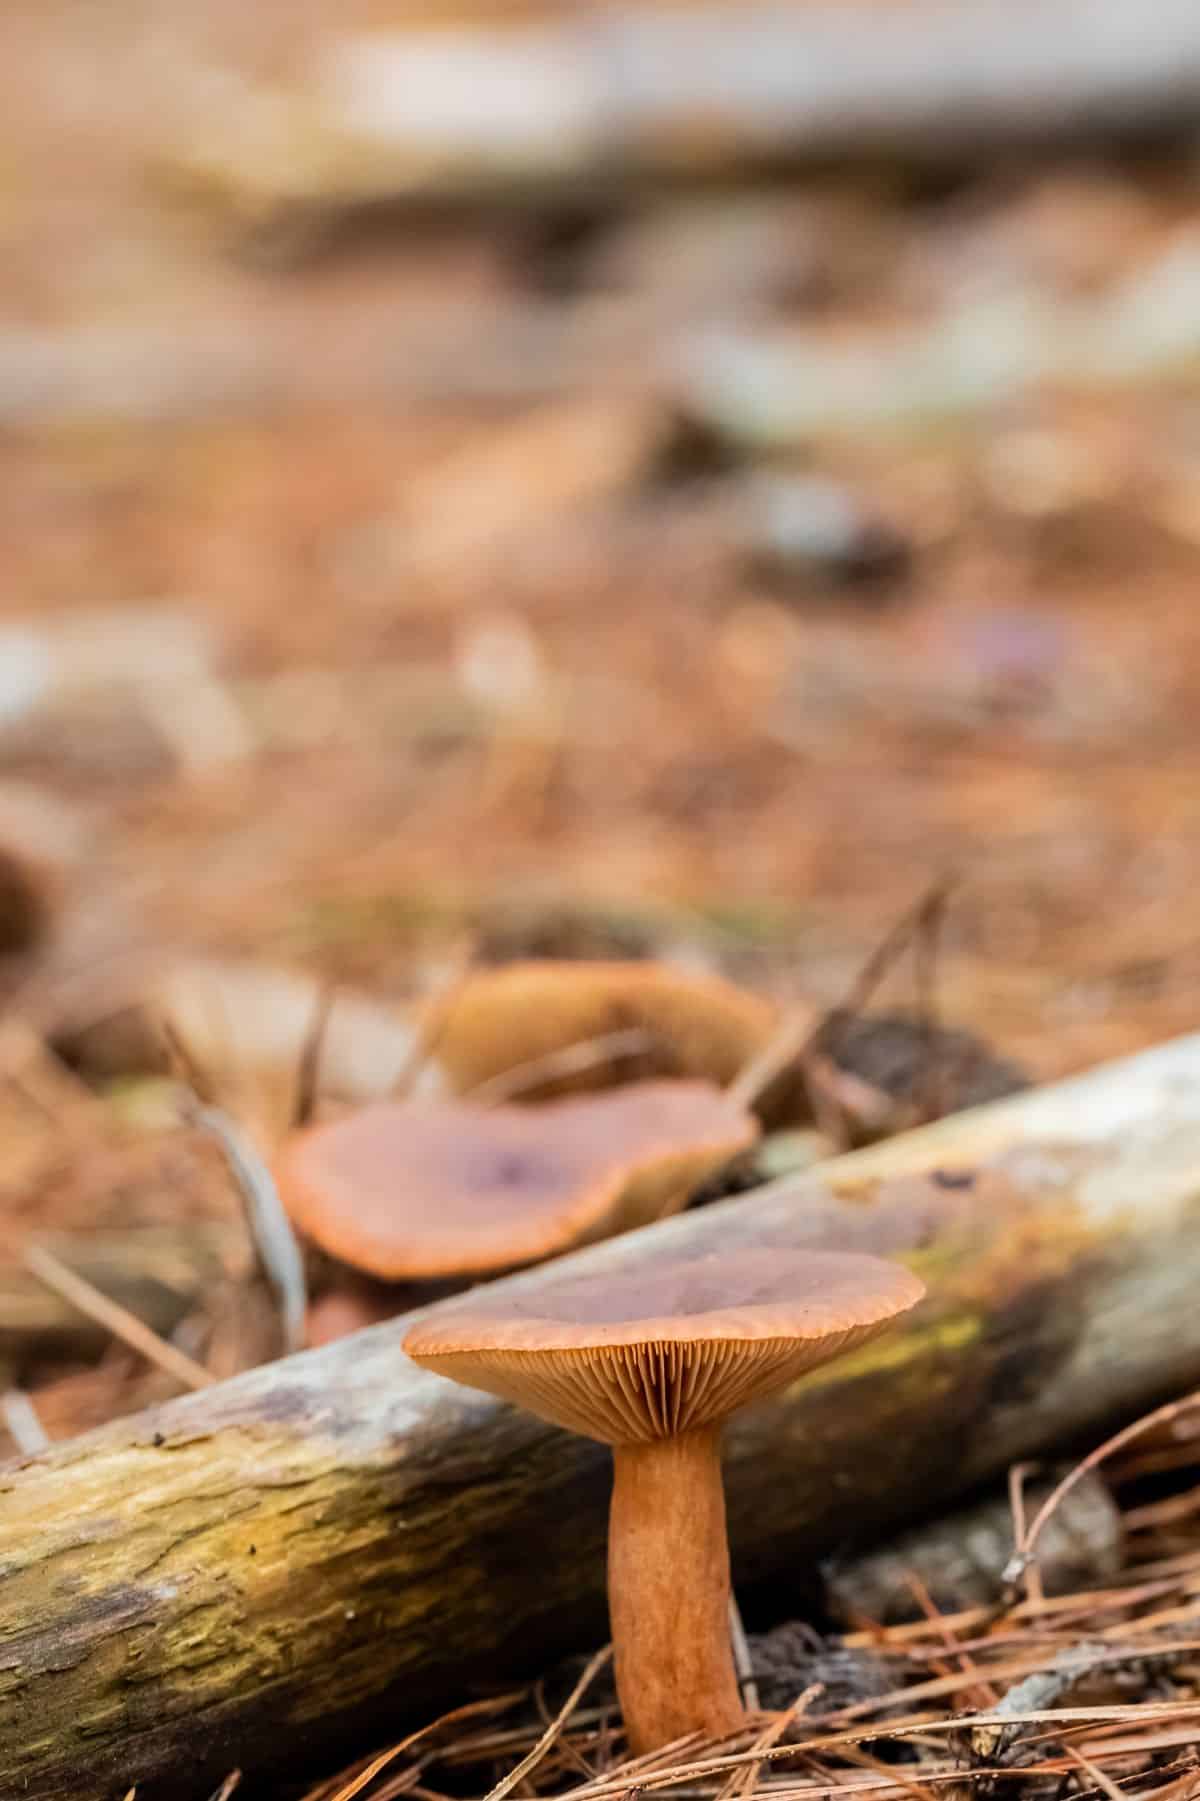 candy cap mushroom